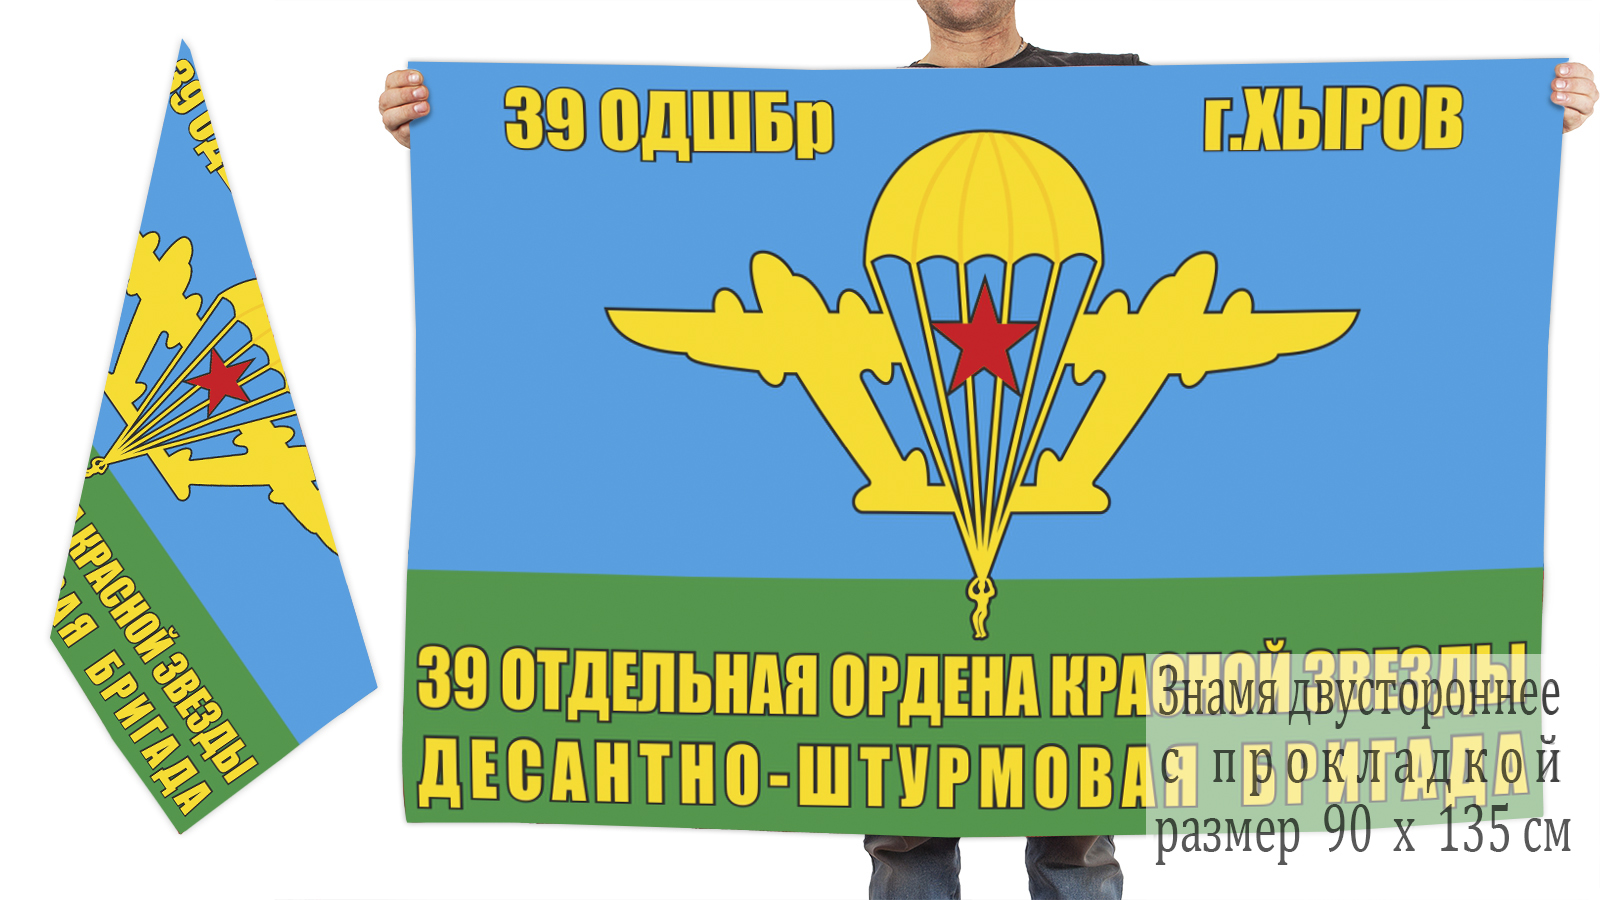 Двусторонний флаг 39 ОДШБр г. Хыров